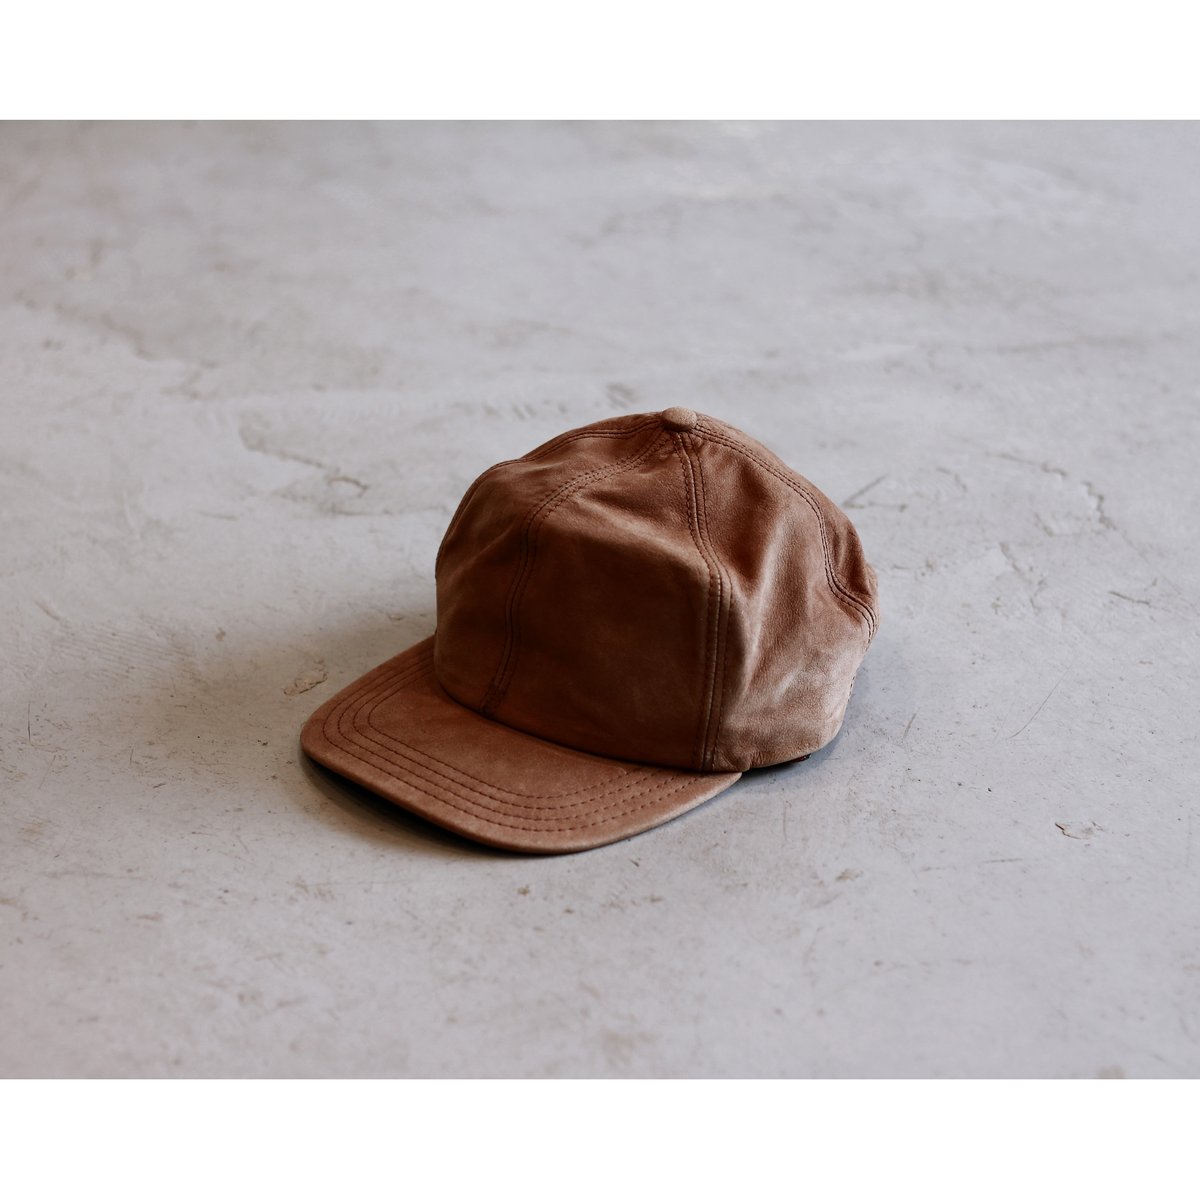 【カンガルー革】genuine PELLUCCI  Leather  帽子 ワニ